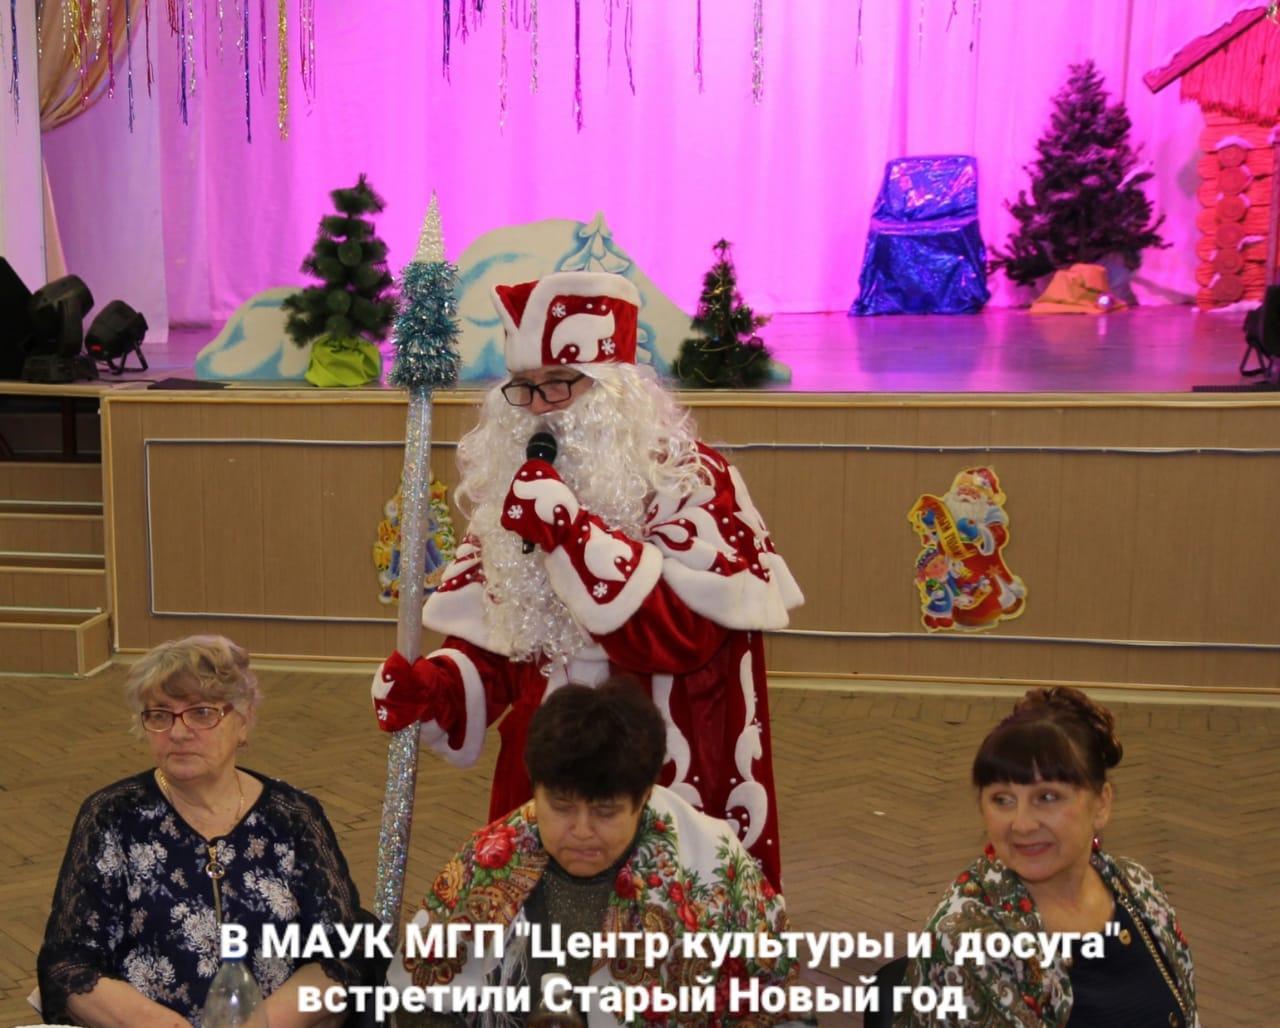 В МАУК МГП "Центр культуры и досуга" встретили Старый Новый год , который раньше на Руси называли Васильев день.